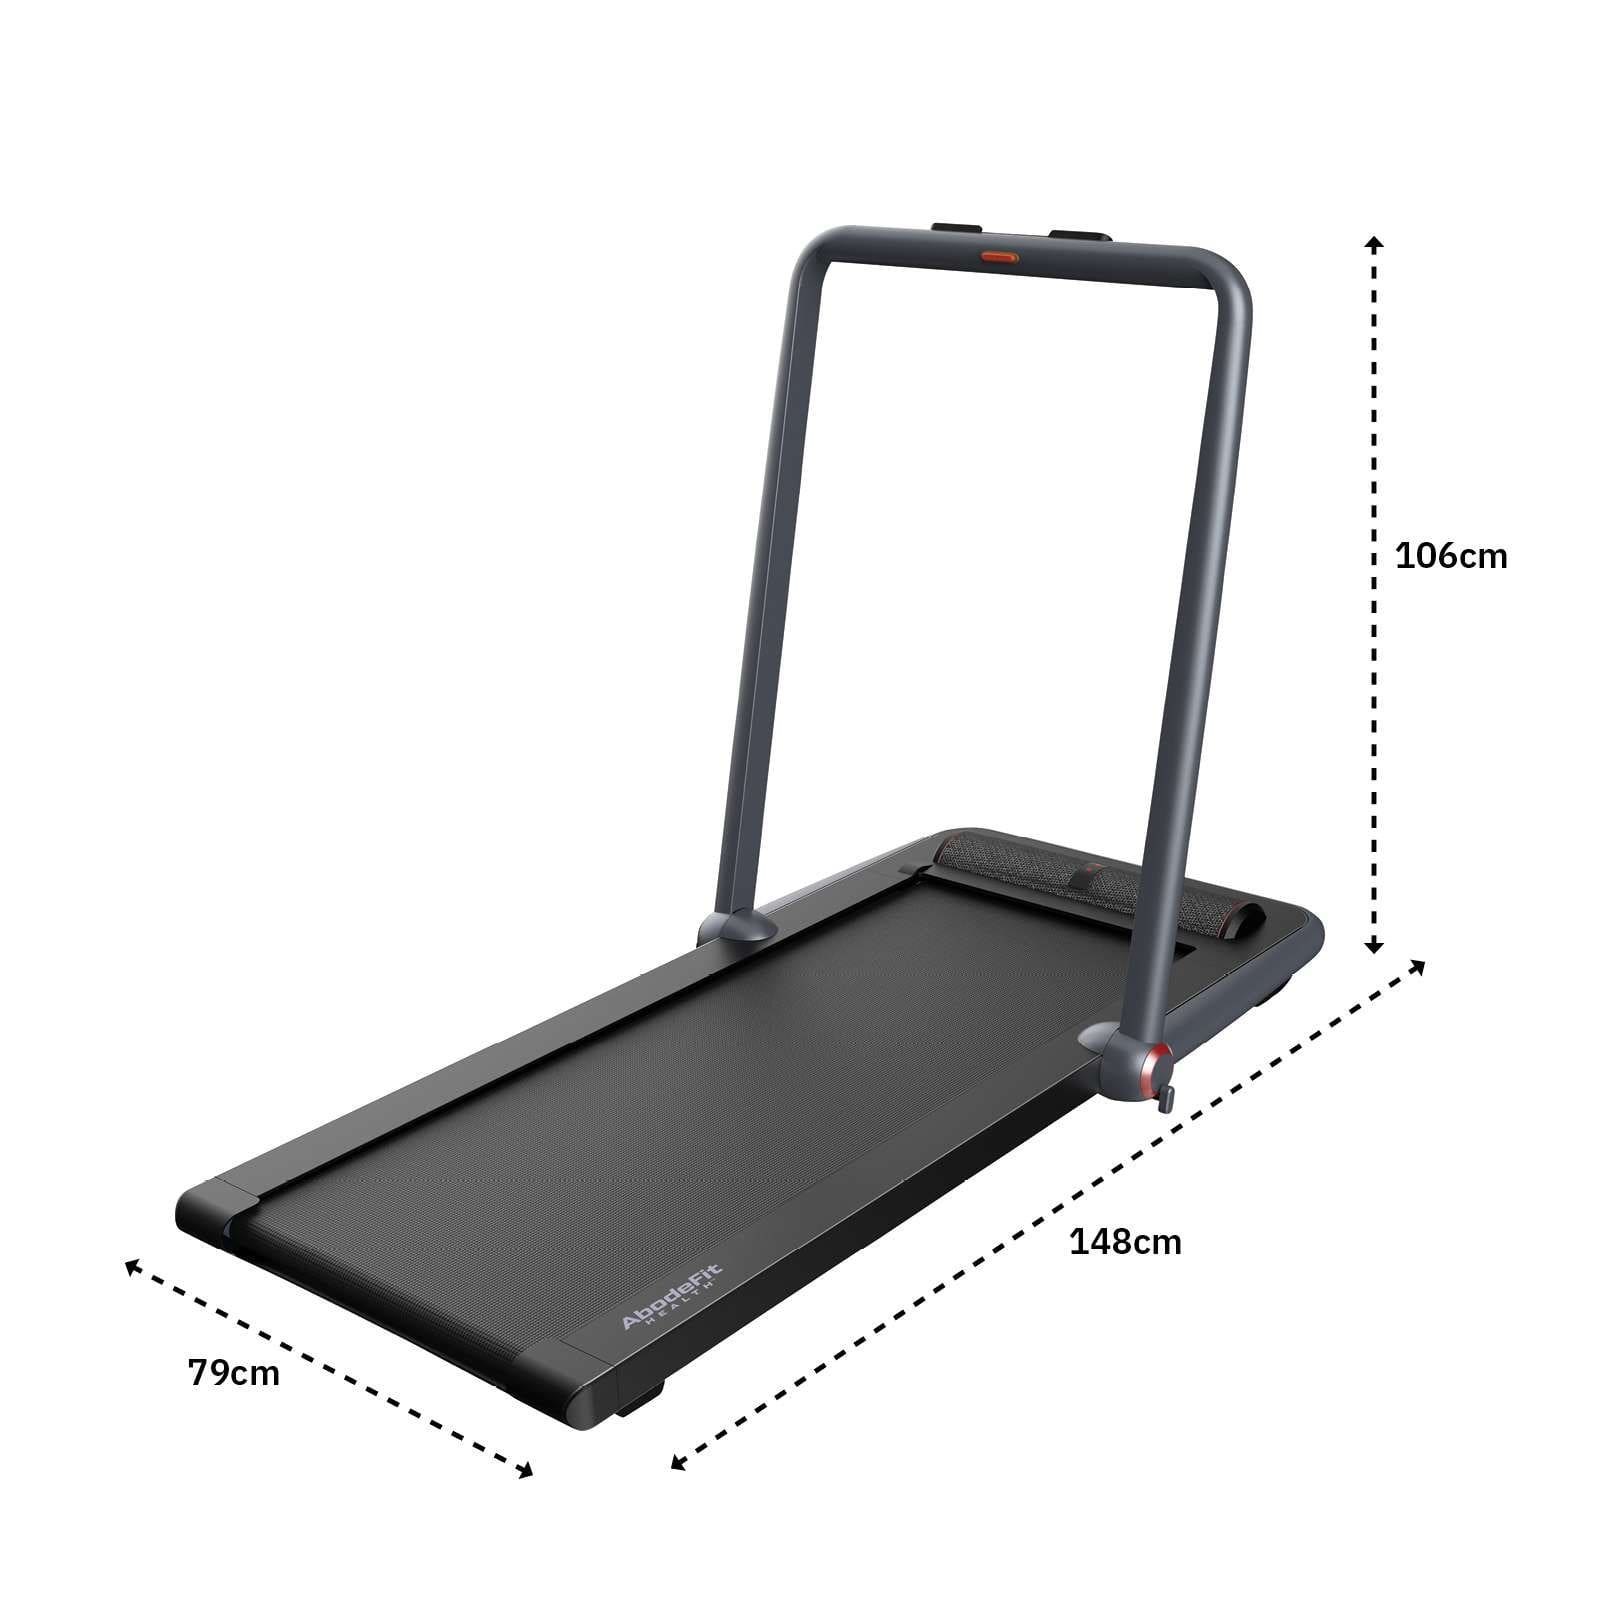 WalkSlim 830 Treadmill - Dimensions